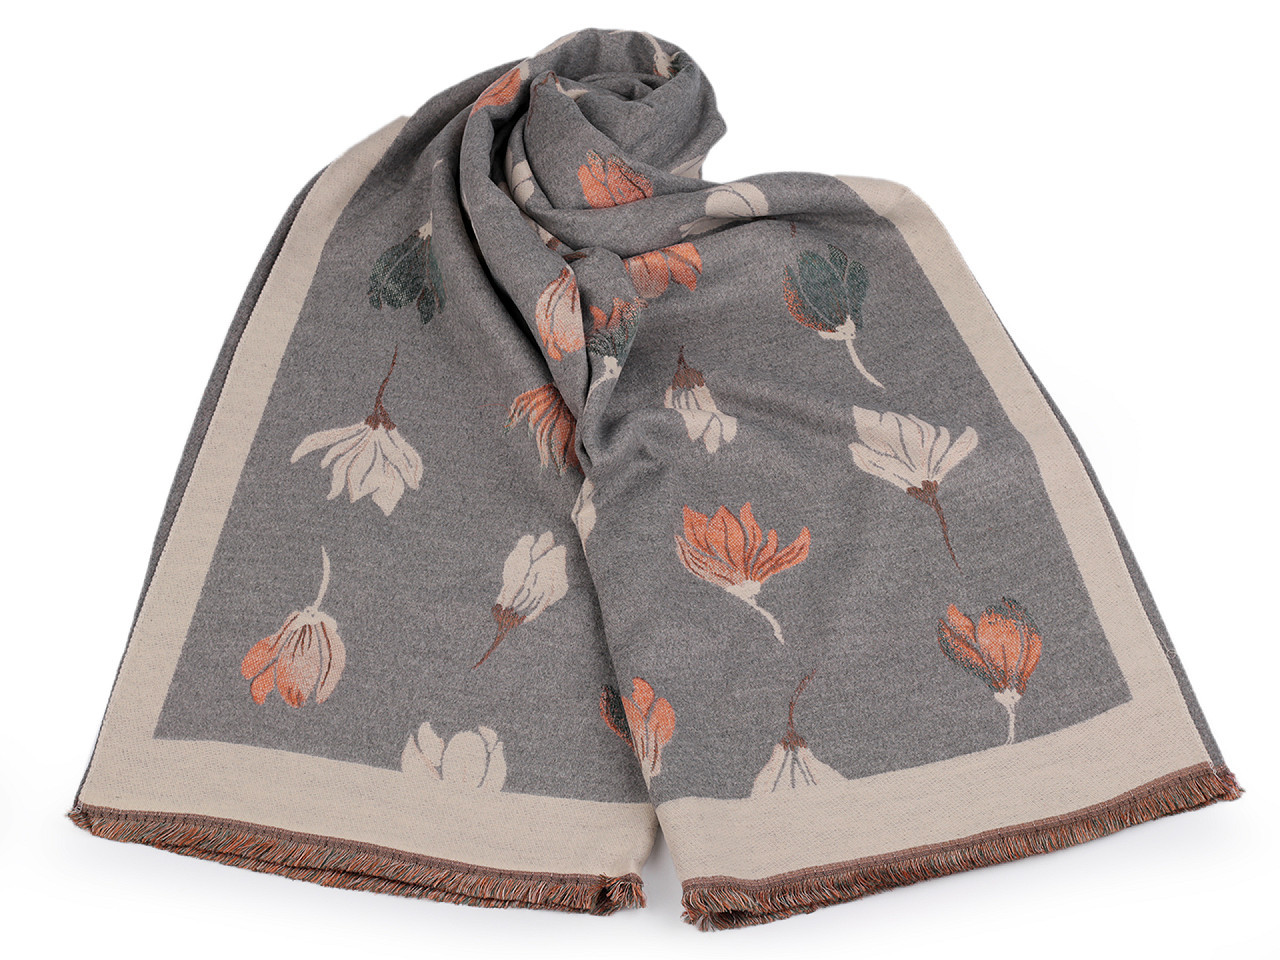 Šátek / šála typu kašmír s třásněmi, květy 65x190 cm, barva 17 šedá světlá béžová světlá